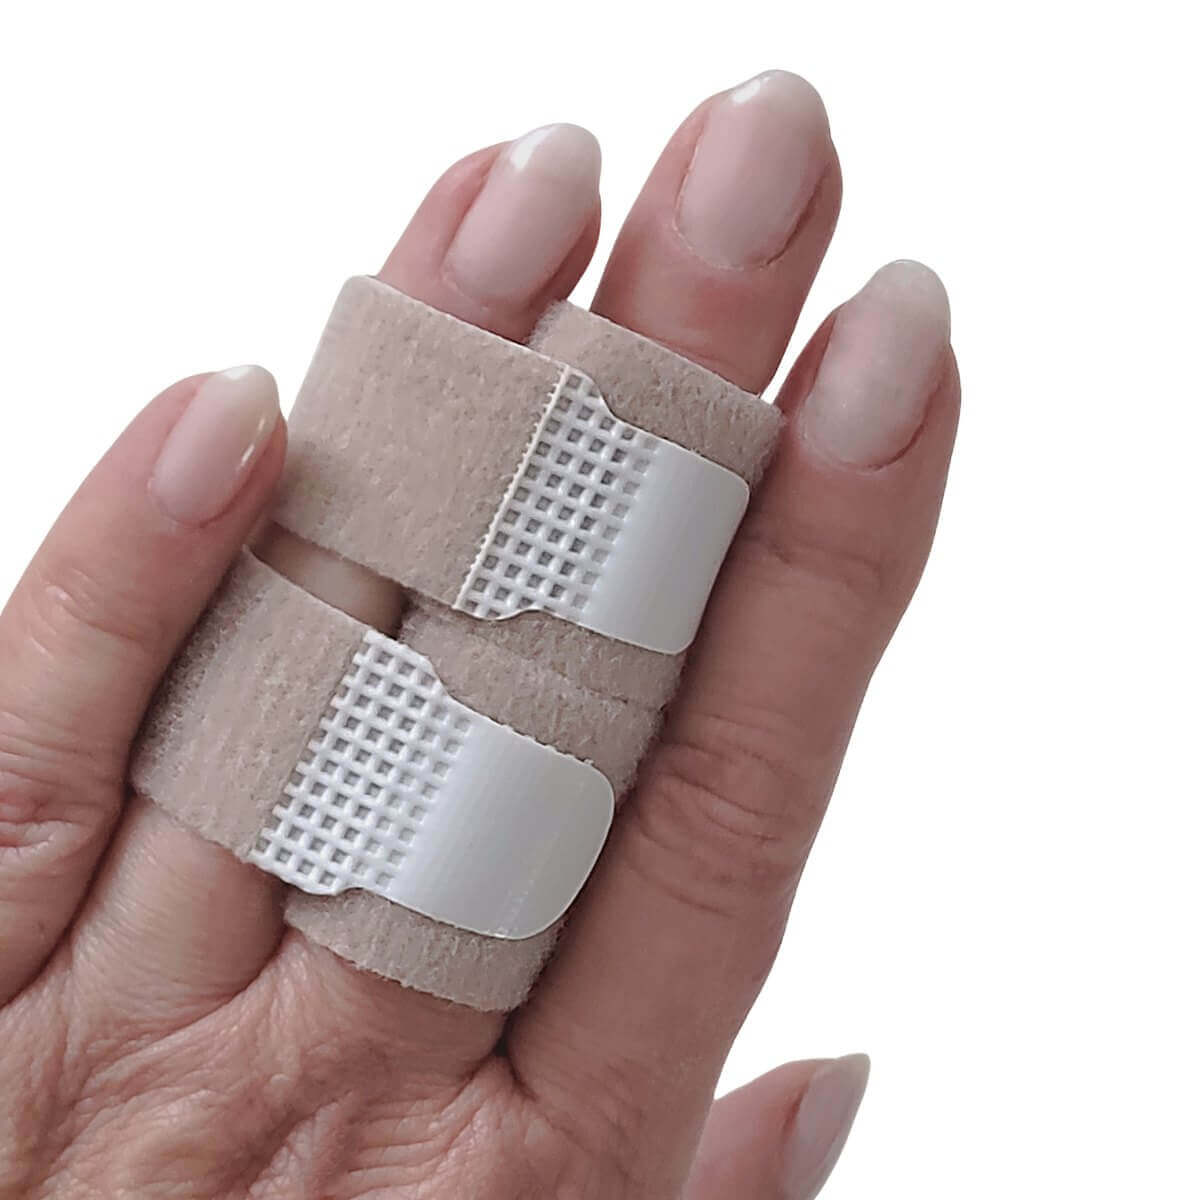 Tå og finger bandage er velegnet til optapening af tæer og fingre ved smerter og skader fra forstuvning og brud. Køb 2 stk. tå og finger bånd her!